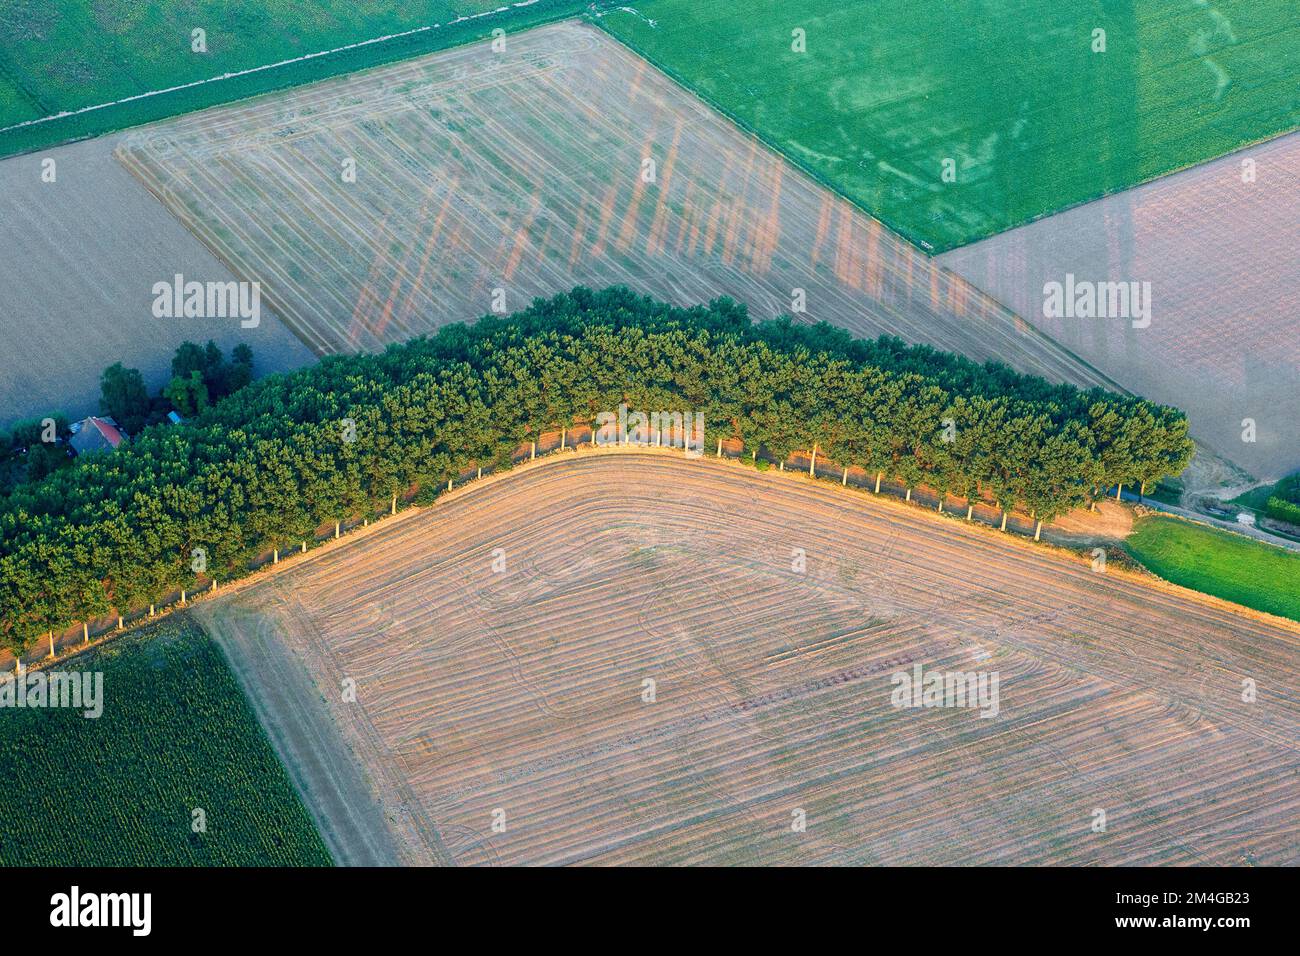 Hedwigepolder, aerial view, Belgium, Antwerp, Hedwigepolder Stock Photo